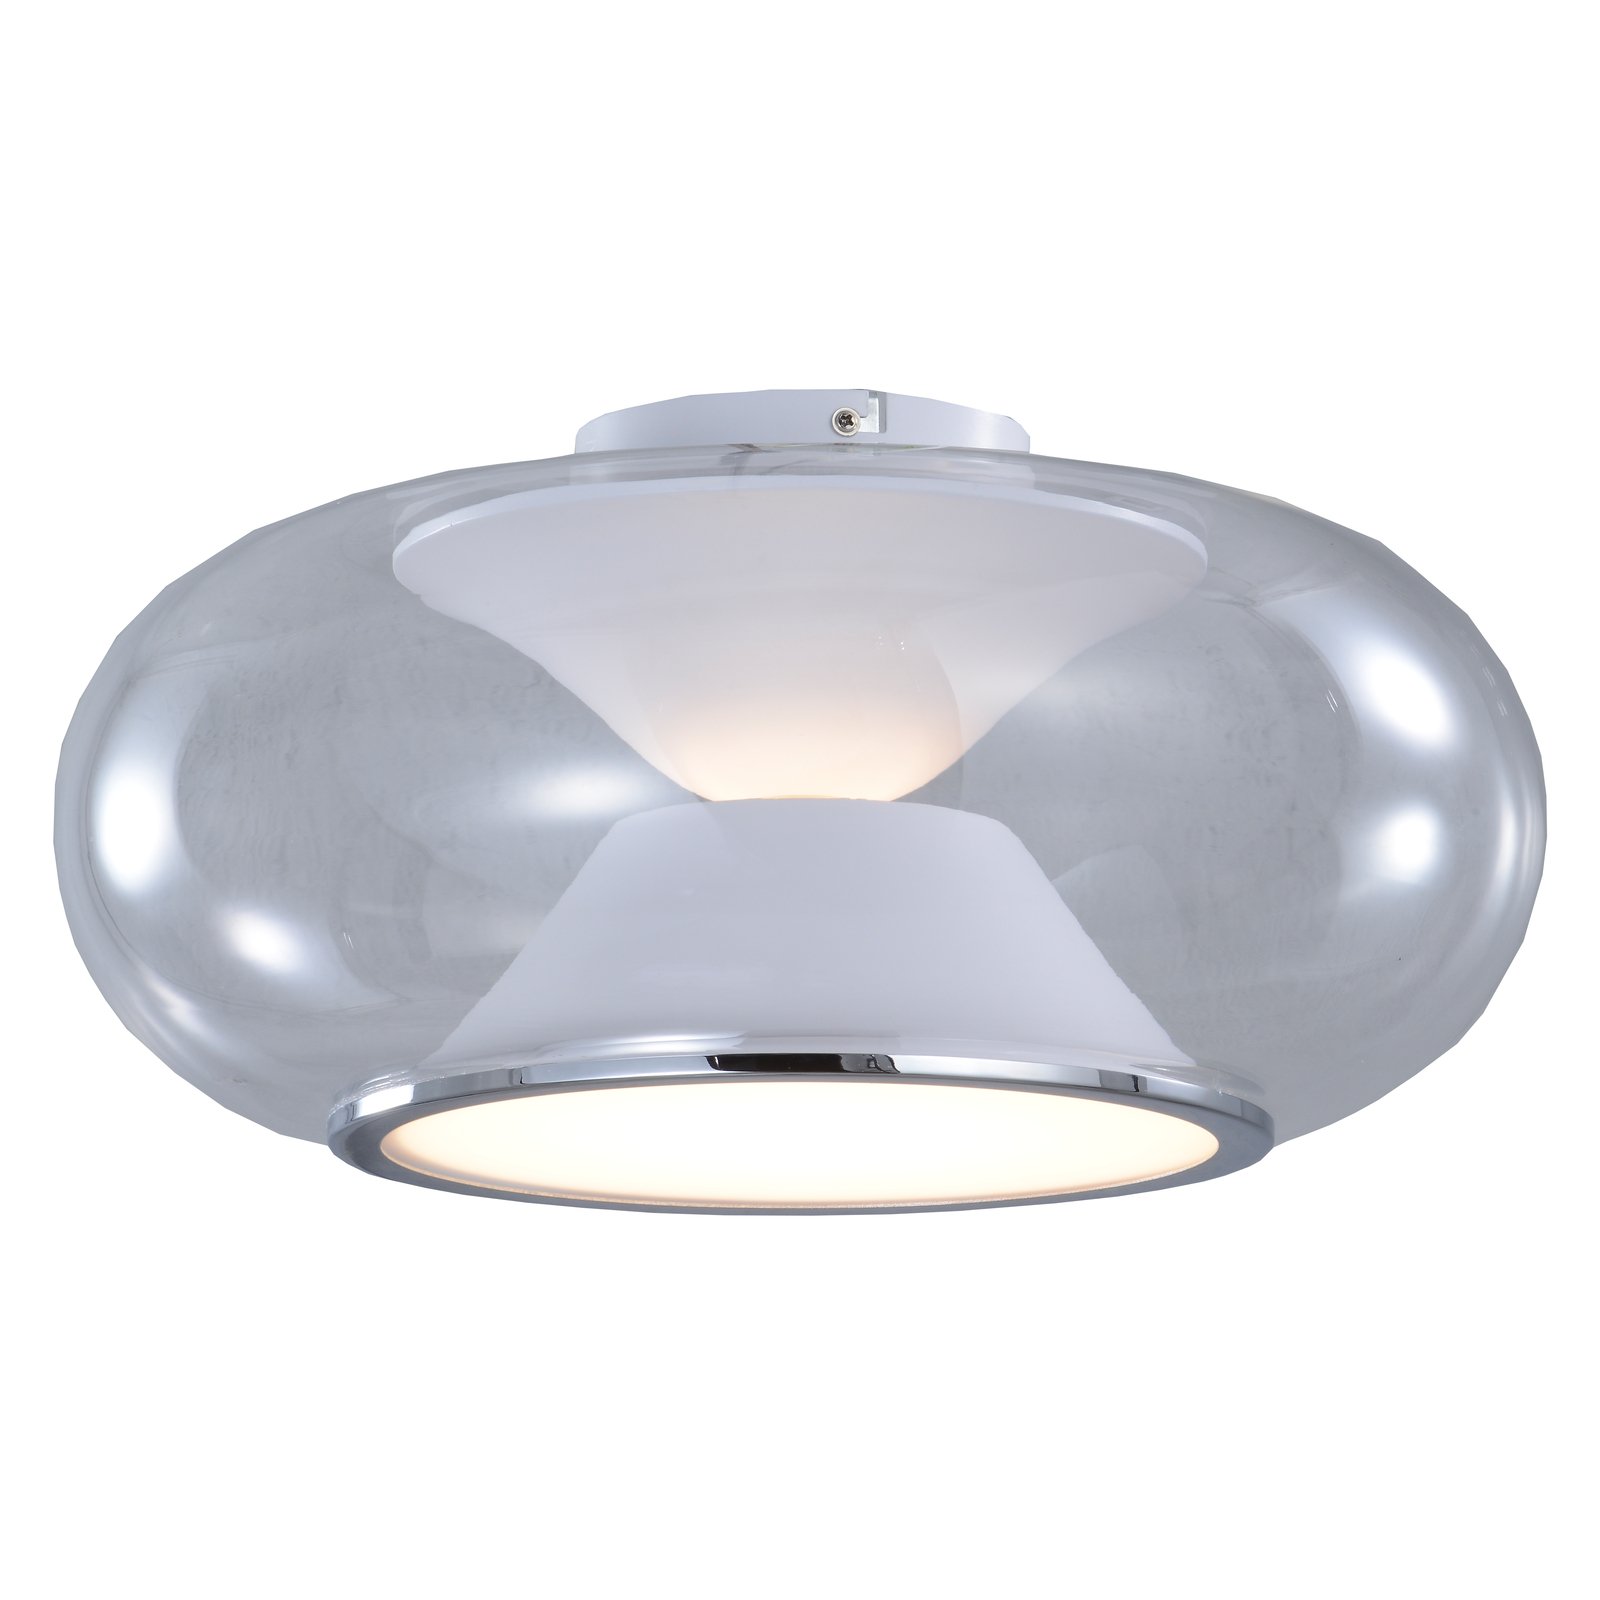 Lucande Orasa LED mennyezeti lámpa, üveg, fehér/tiszta, Ø 43 cm